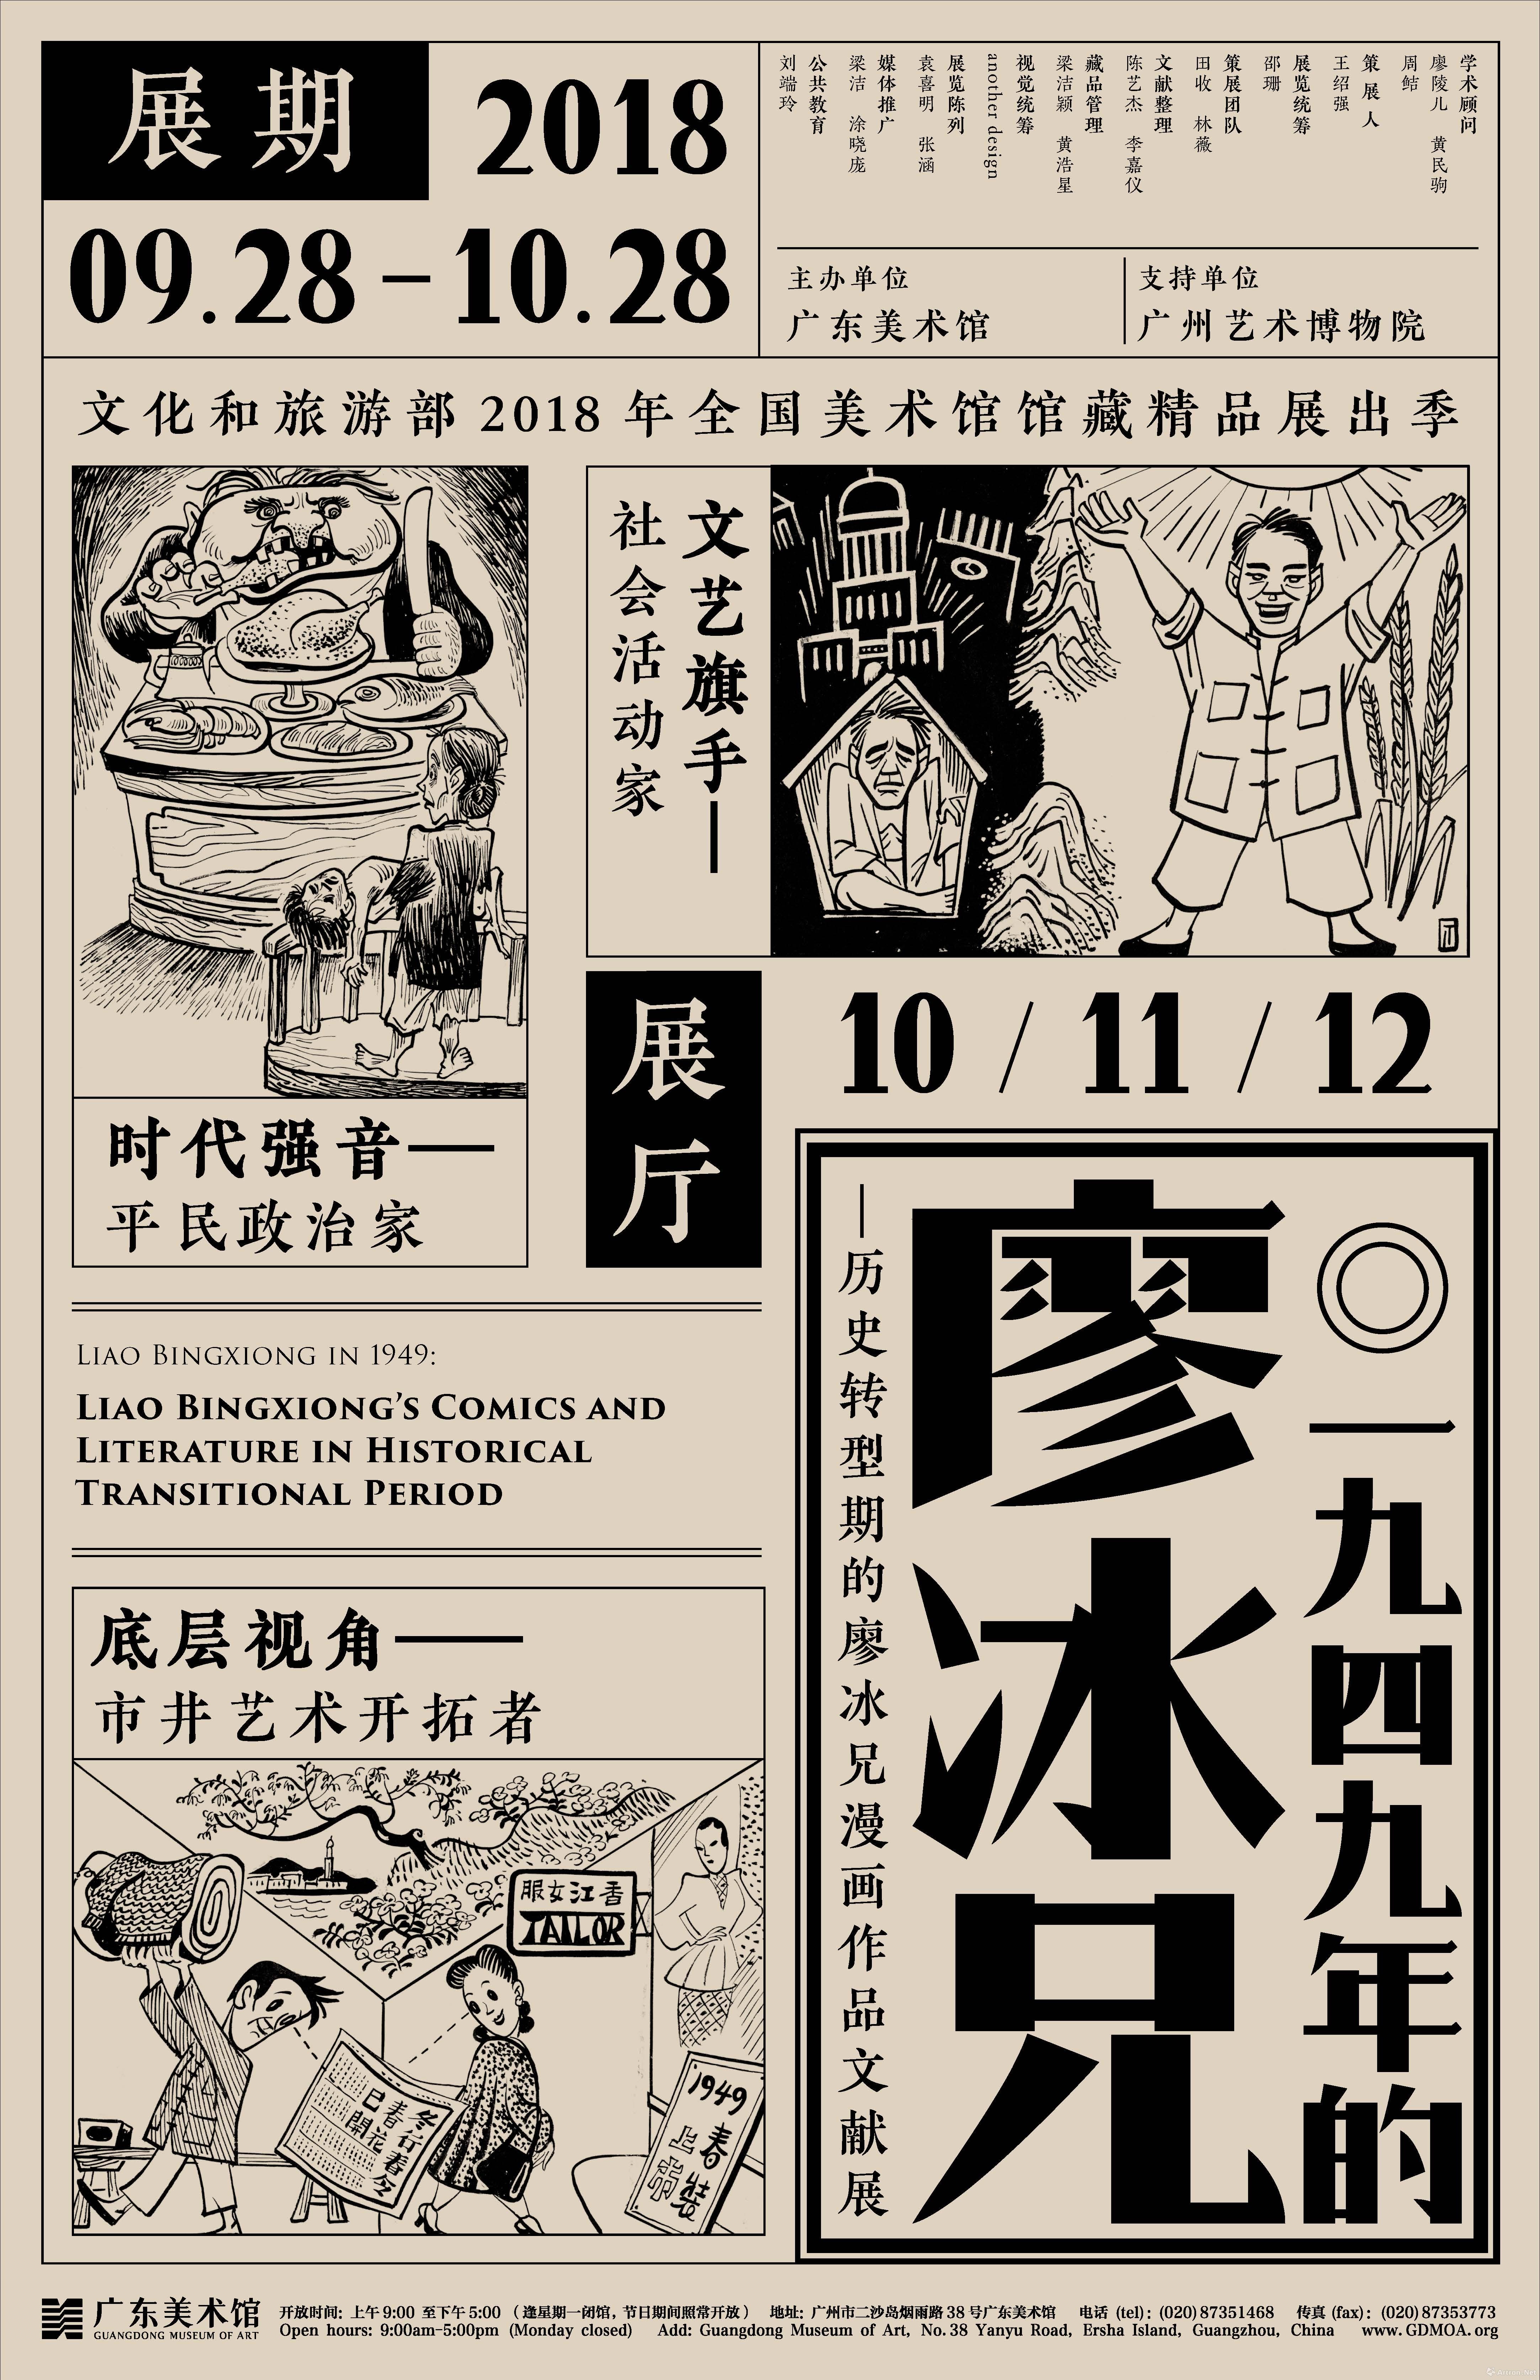 “1949年的廖冰兄”历史转型期的廖冰兄漫画作品文献展